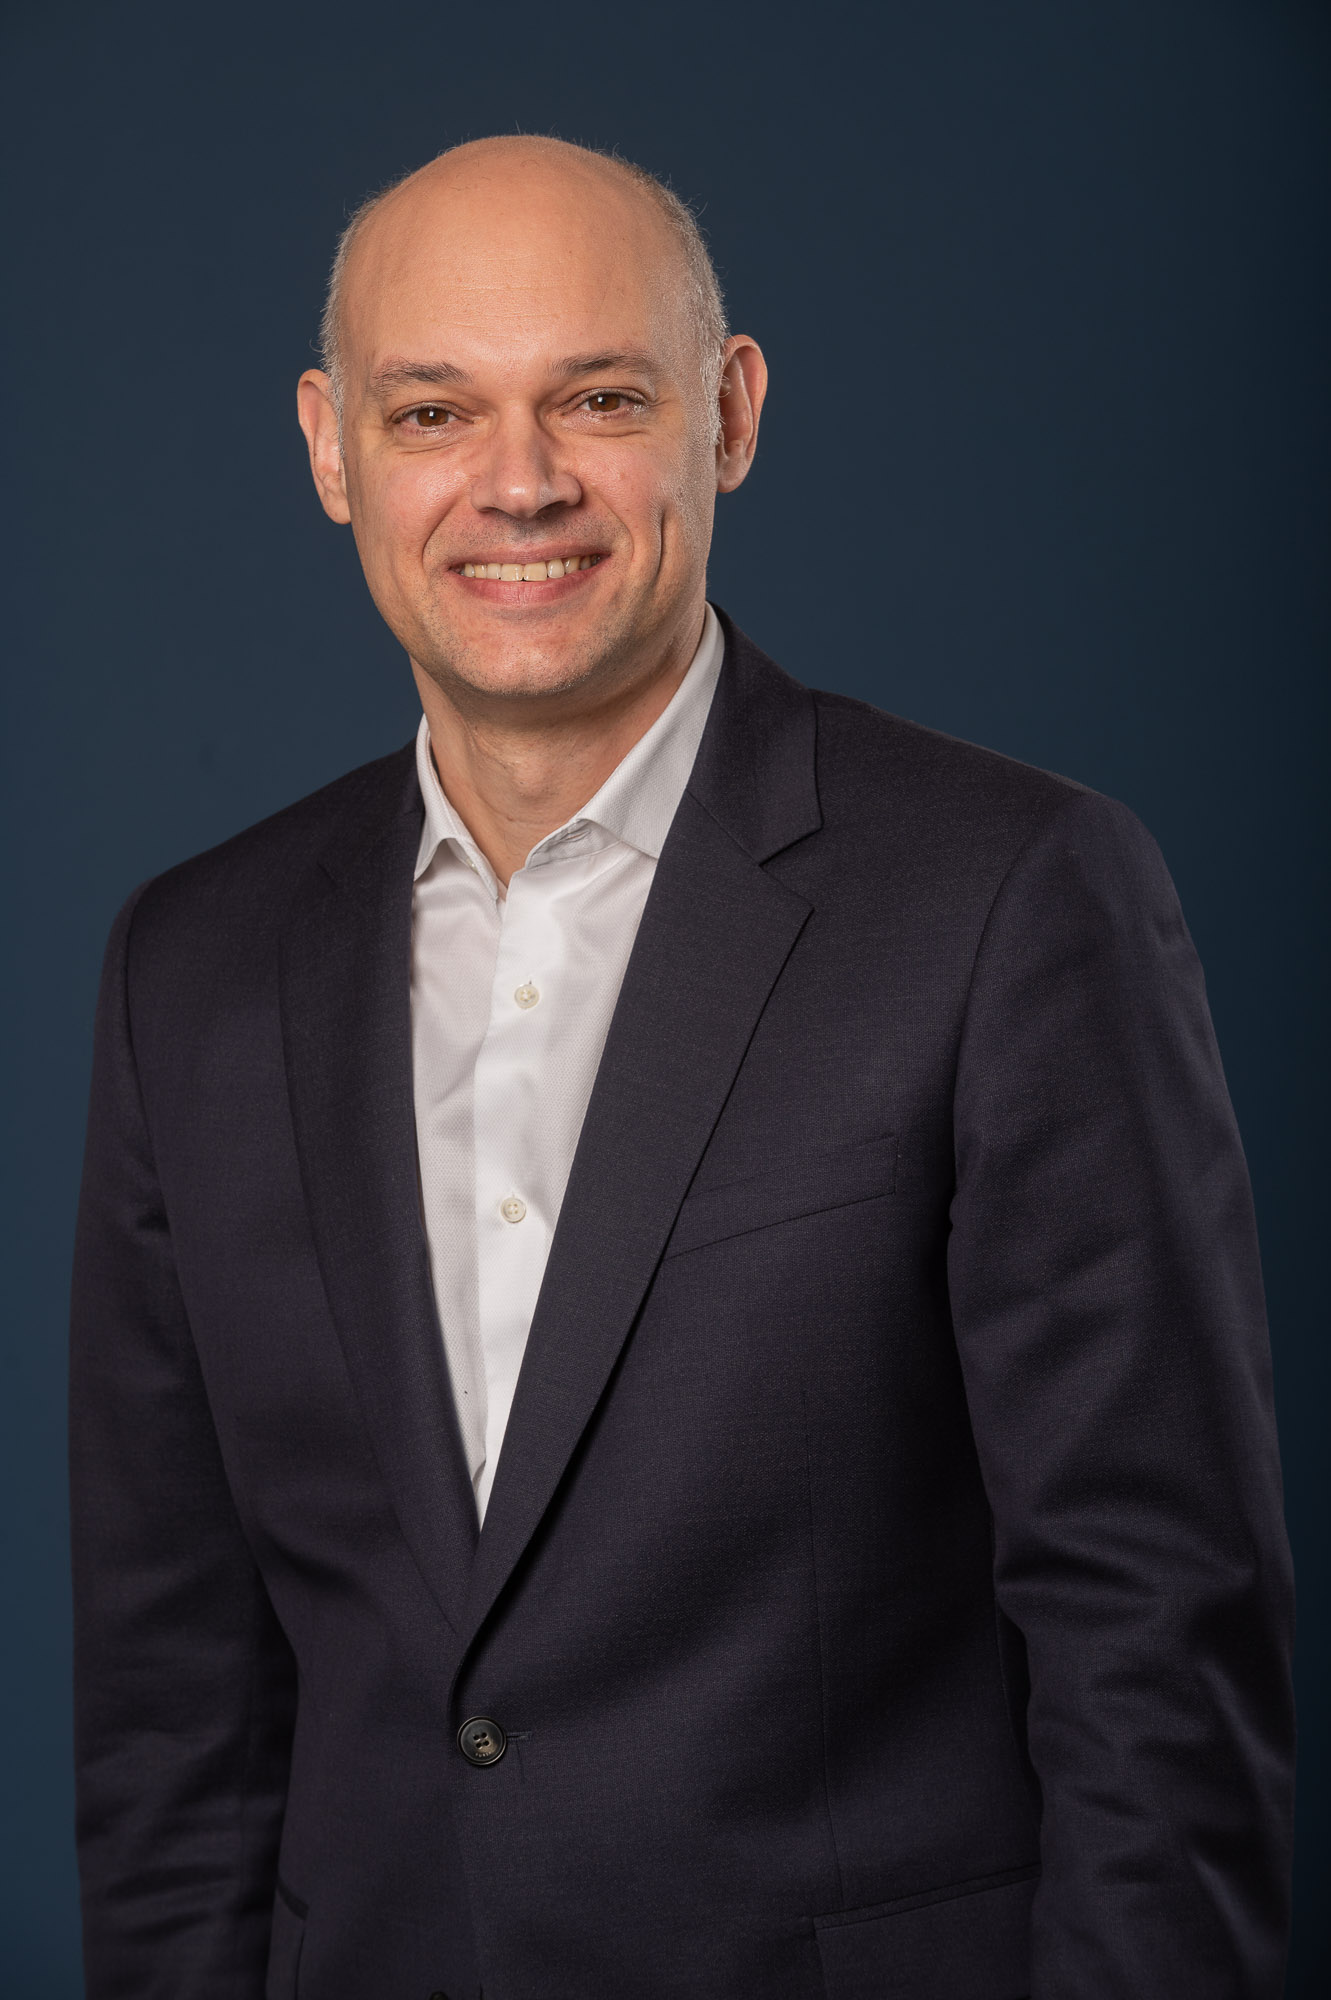 Maxime Tupin est Directeur Général de la Direction Administrative, Financière, Juridique et Communication chez Chronopost